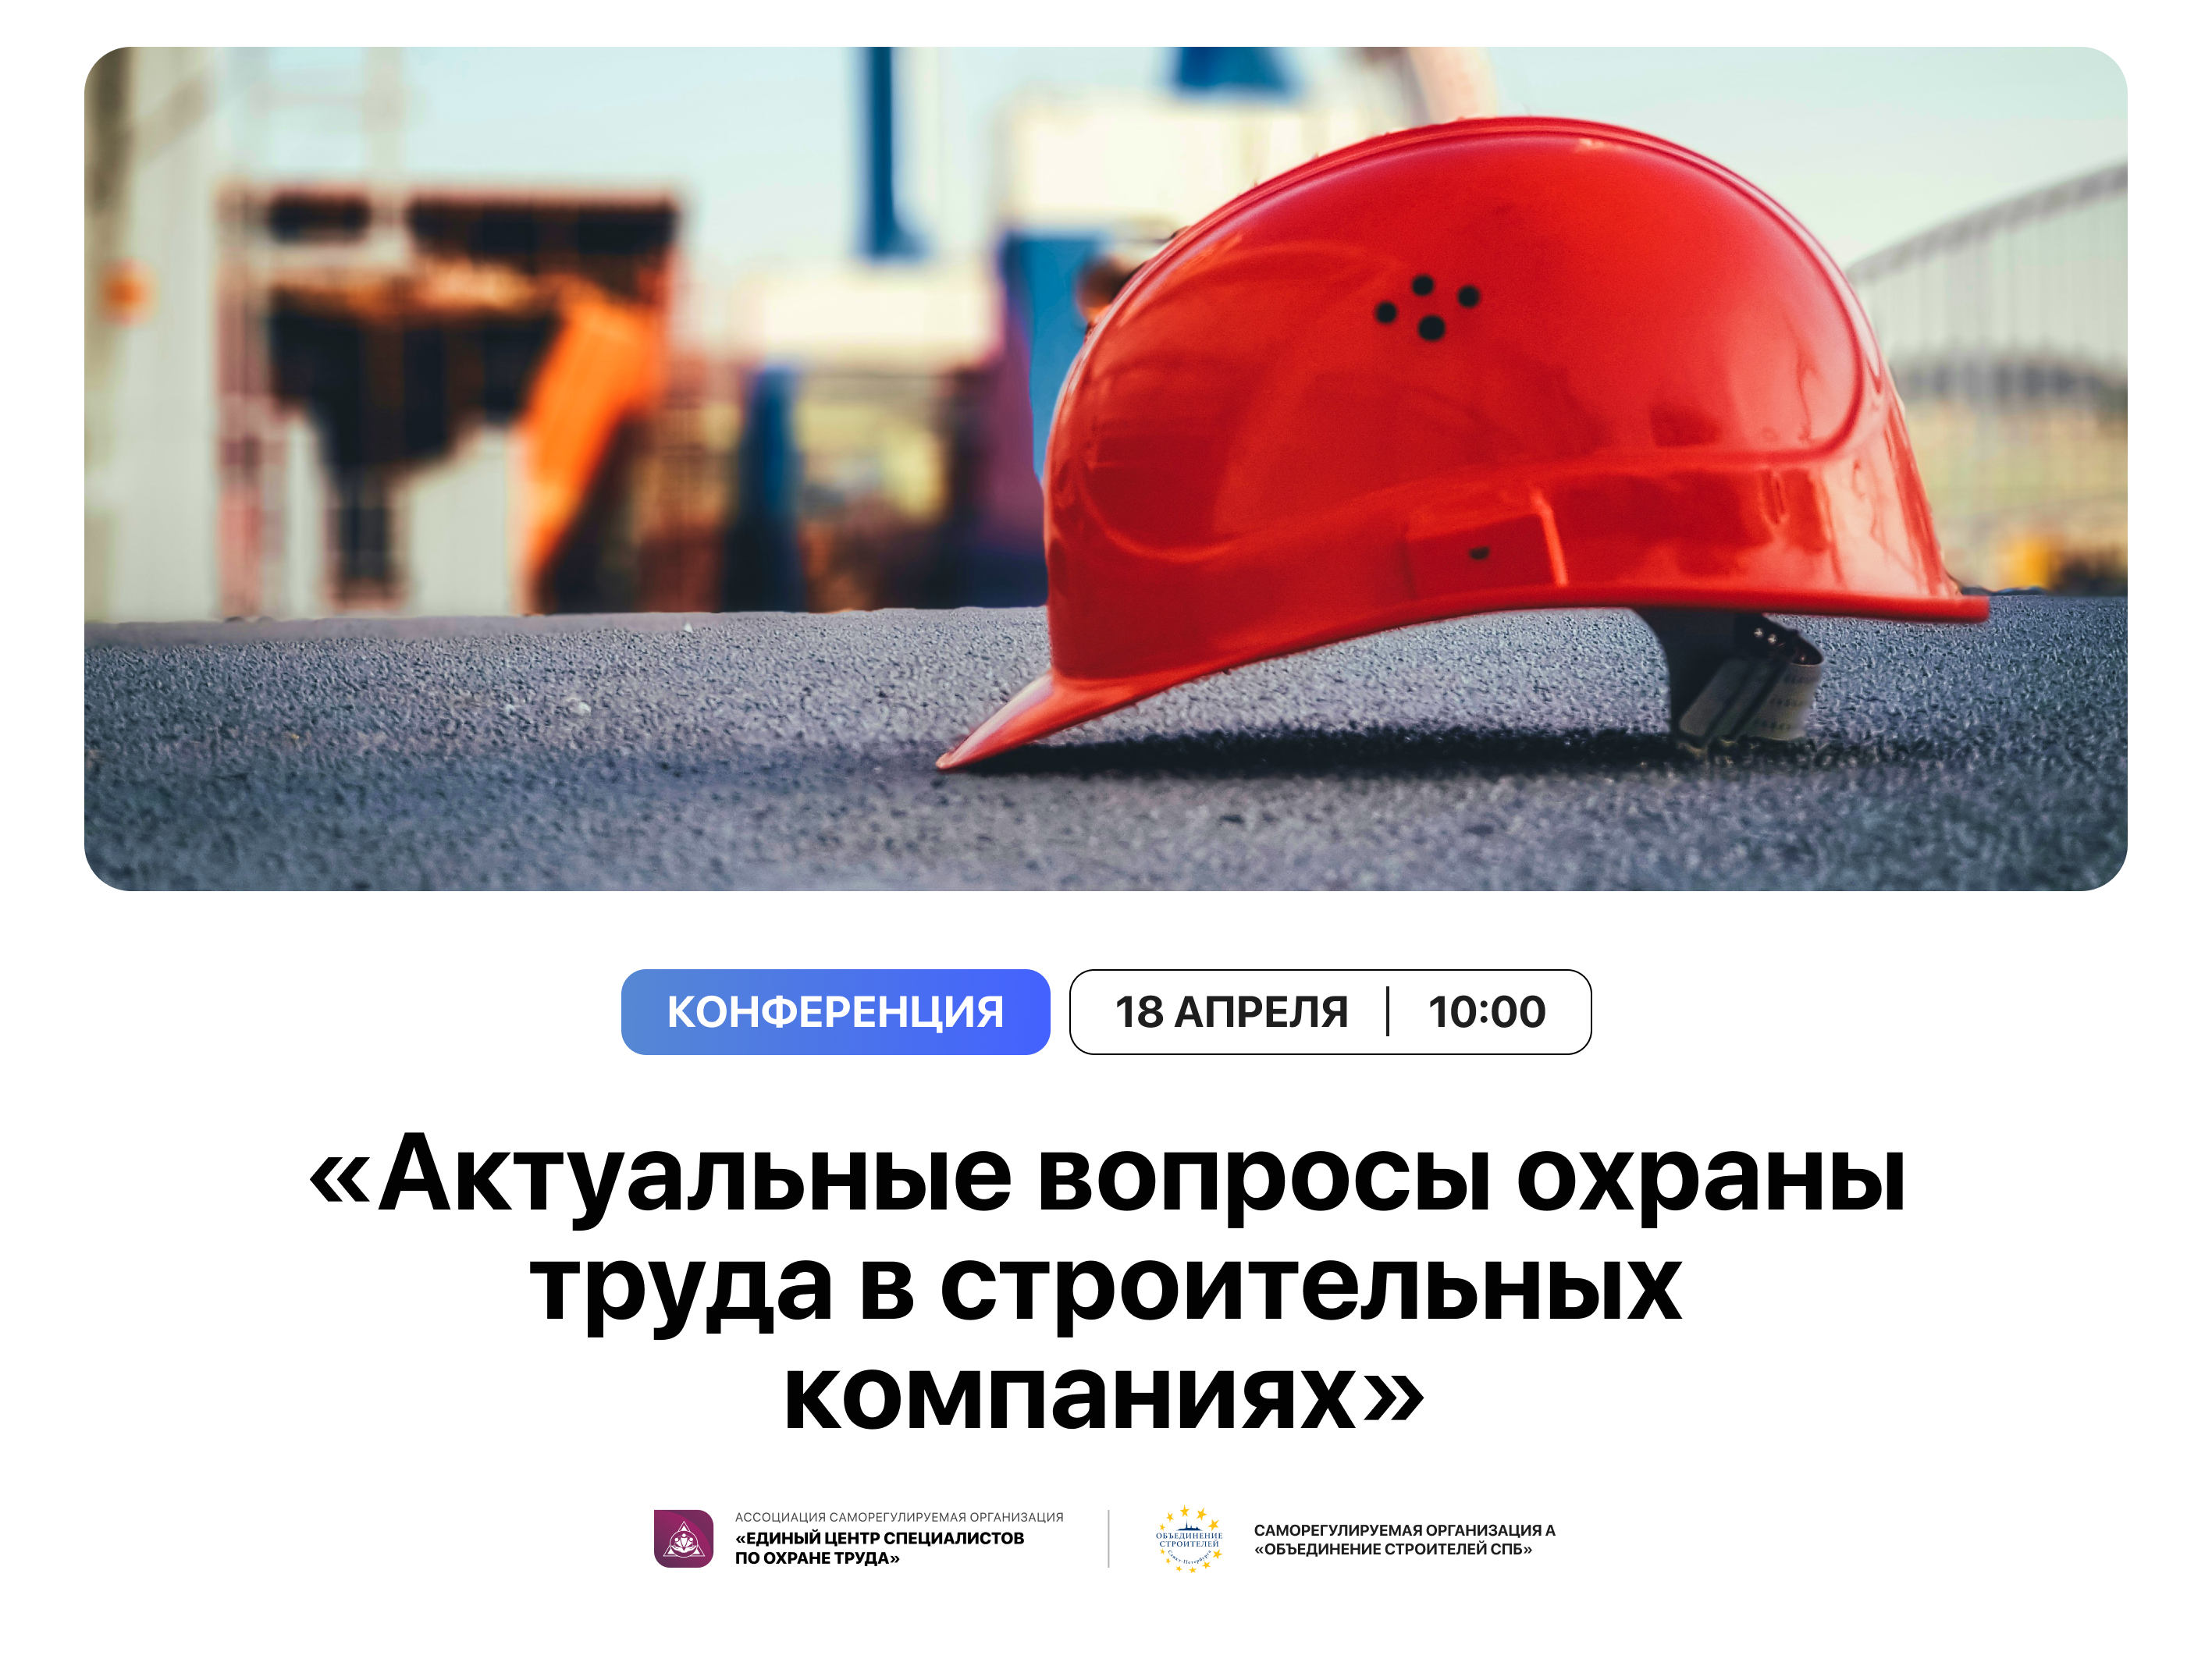 Актуальные вопросы охраны труда в строительных компаниях» совместно с СРО А "Объединение стротелей СПб"